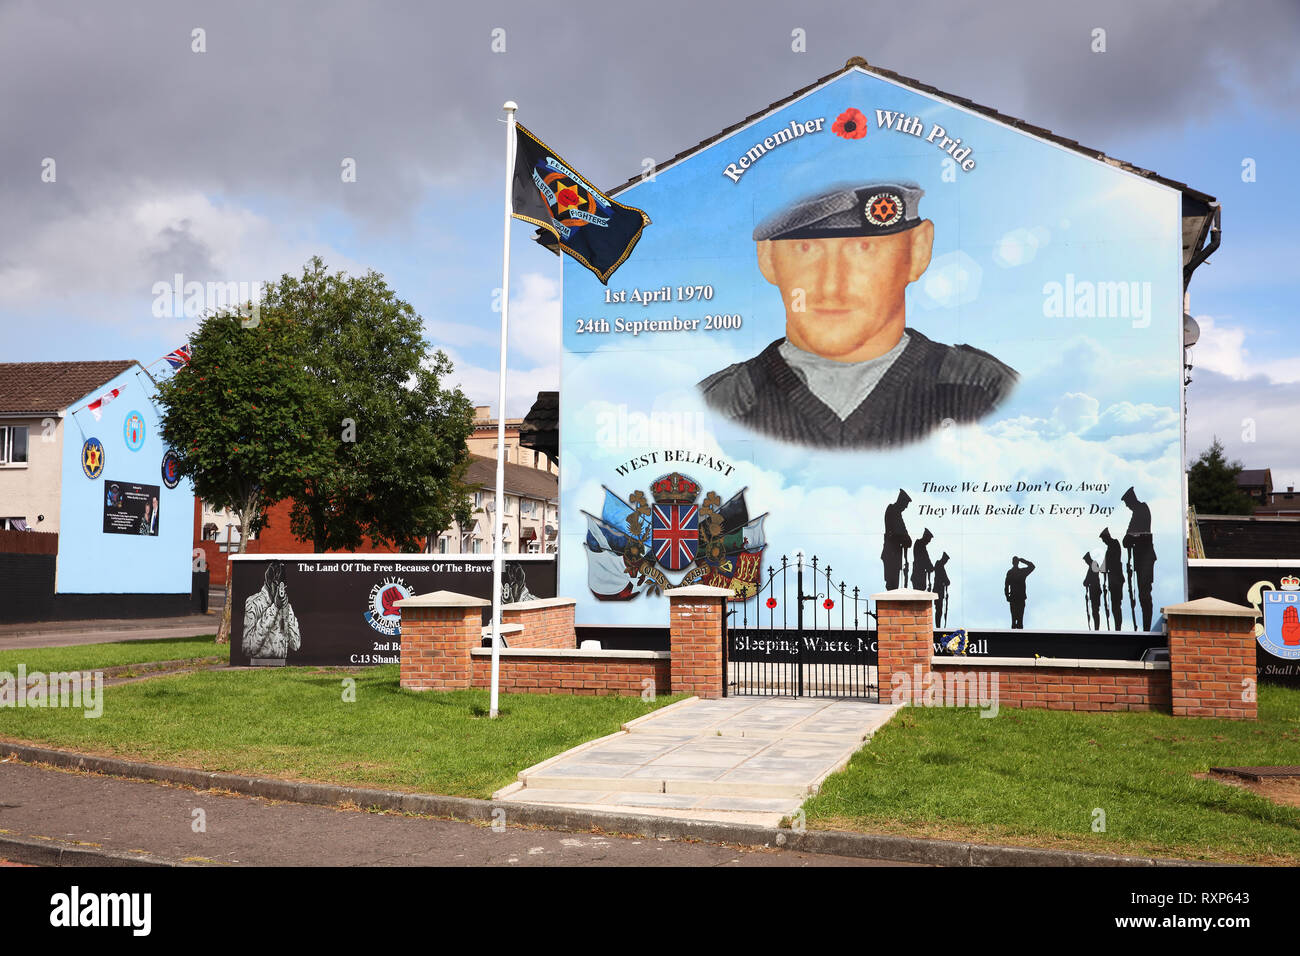 Fresque politique commémorant Ulster Defence Association frégate Stephen McKeag qui était responsable de nombreux assassinats de catholiques et républicains Pendant 'la', Hopewell Crescent, Belfast, en Irlande du Nord Banque D'Images